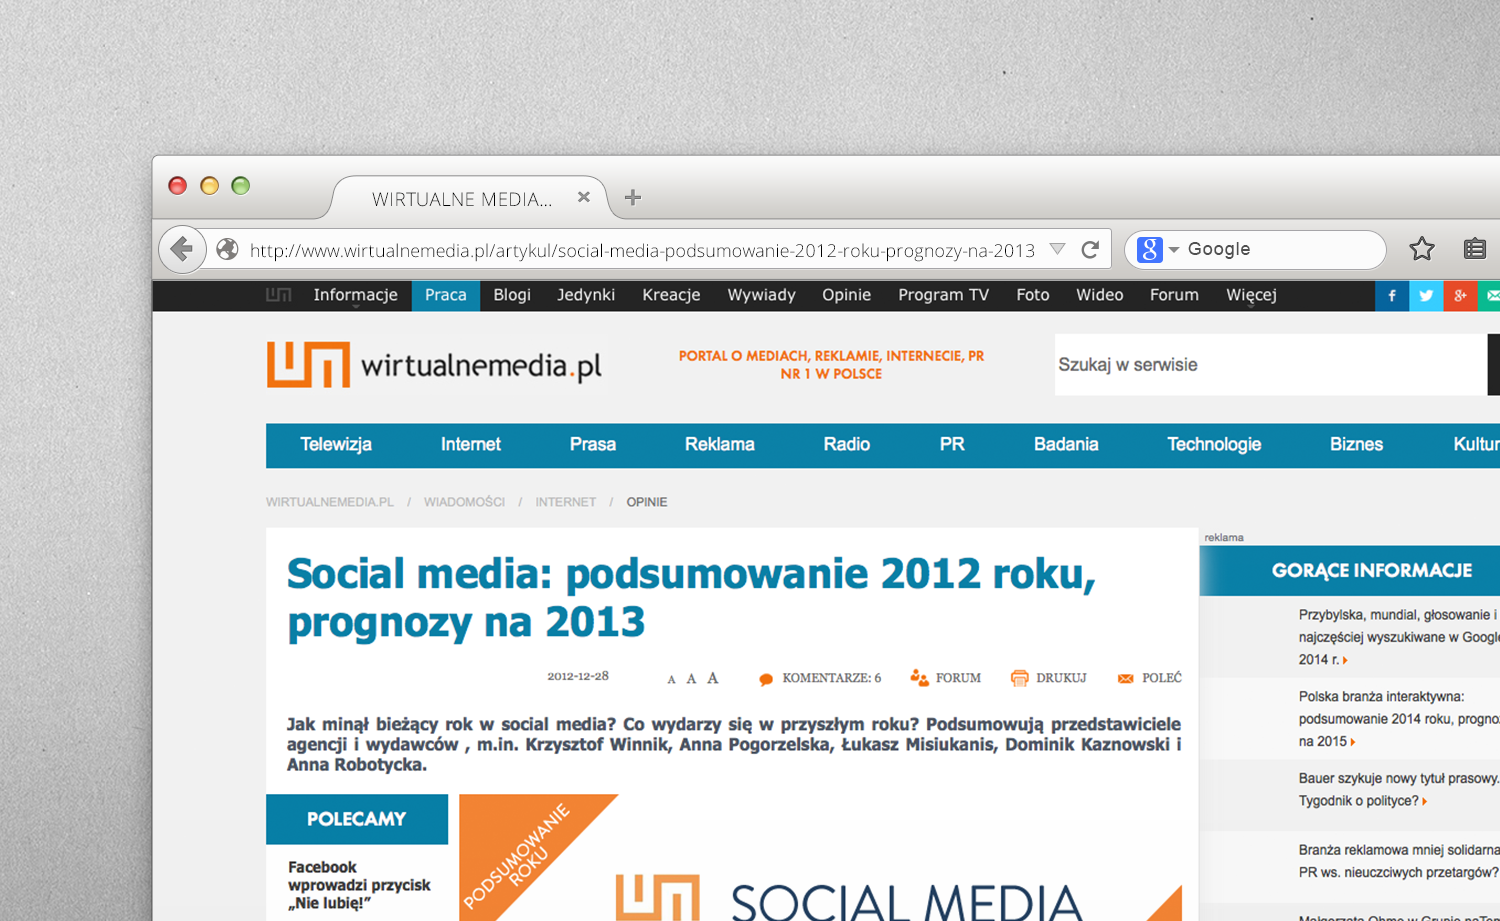 Wirtualnemedia.pl: podsumowanie 2012 roku, prognozy na 2013